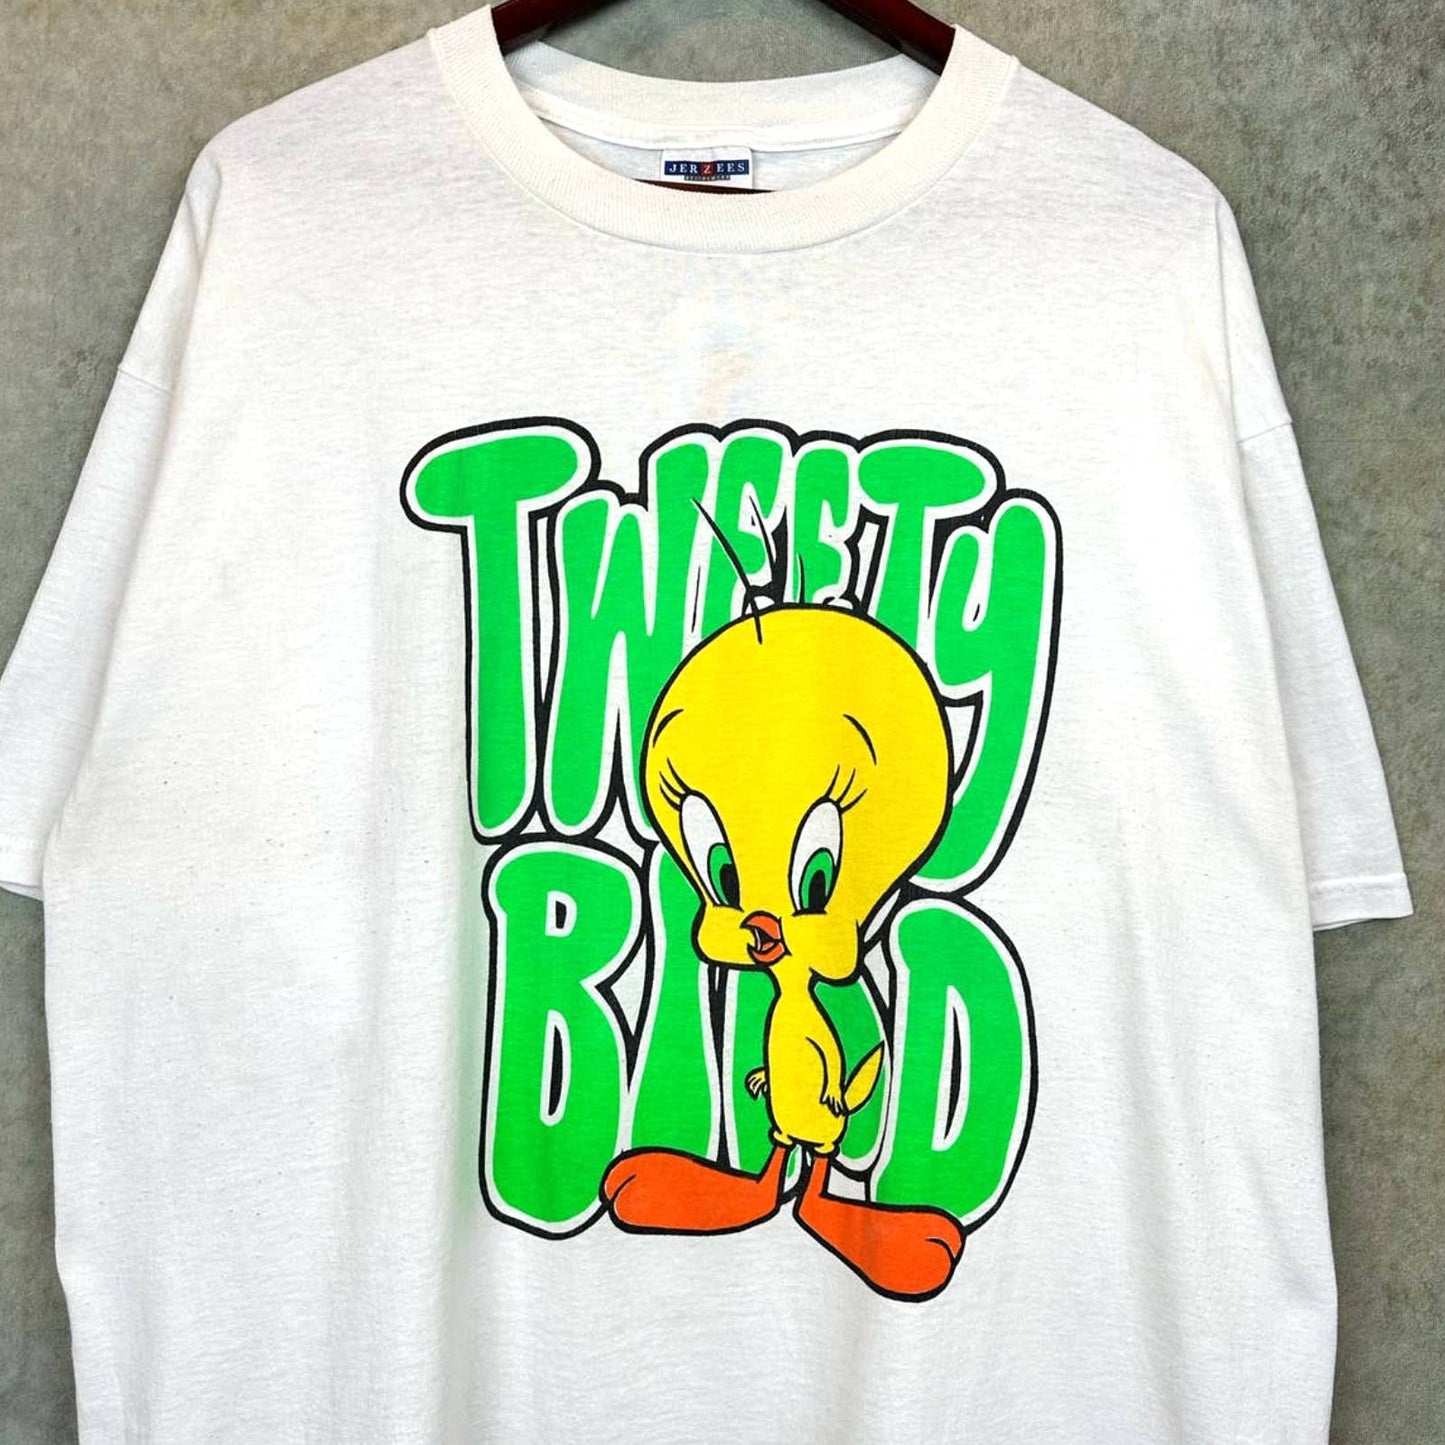 Vintage 90s Tweety Bird T Shirt XL